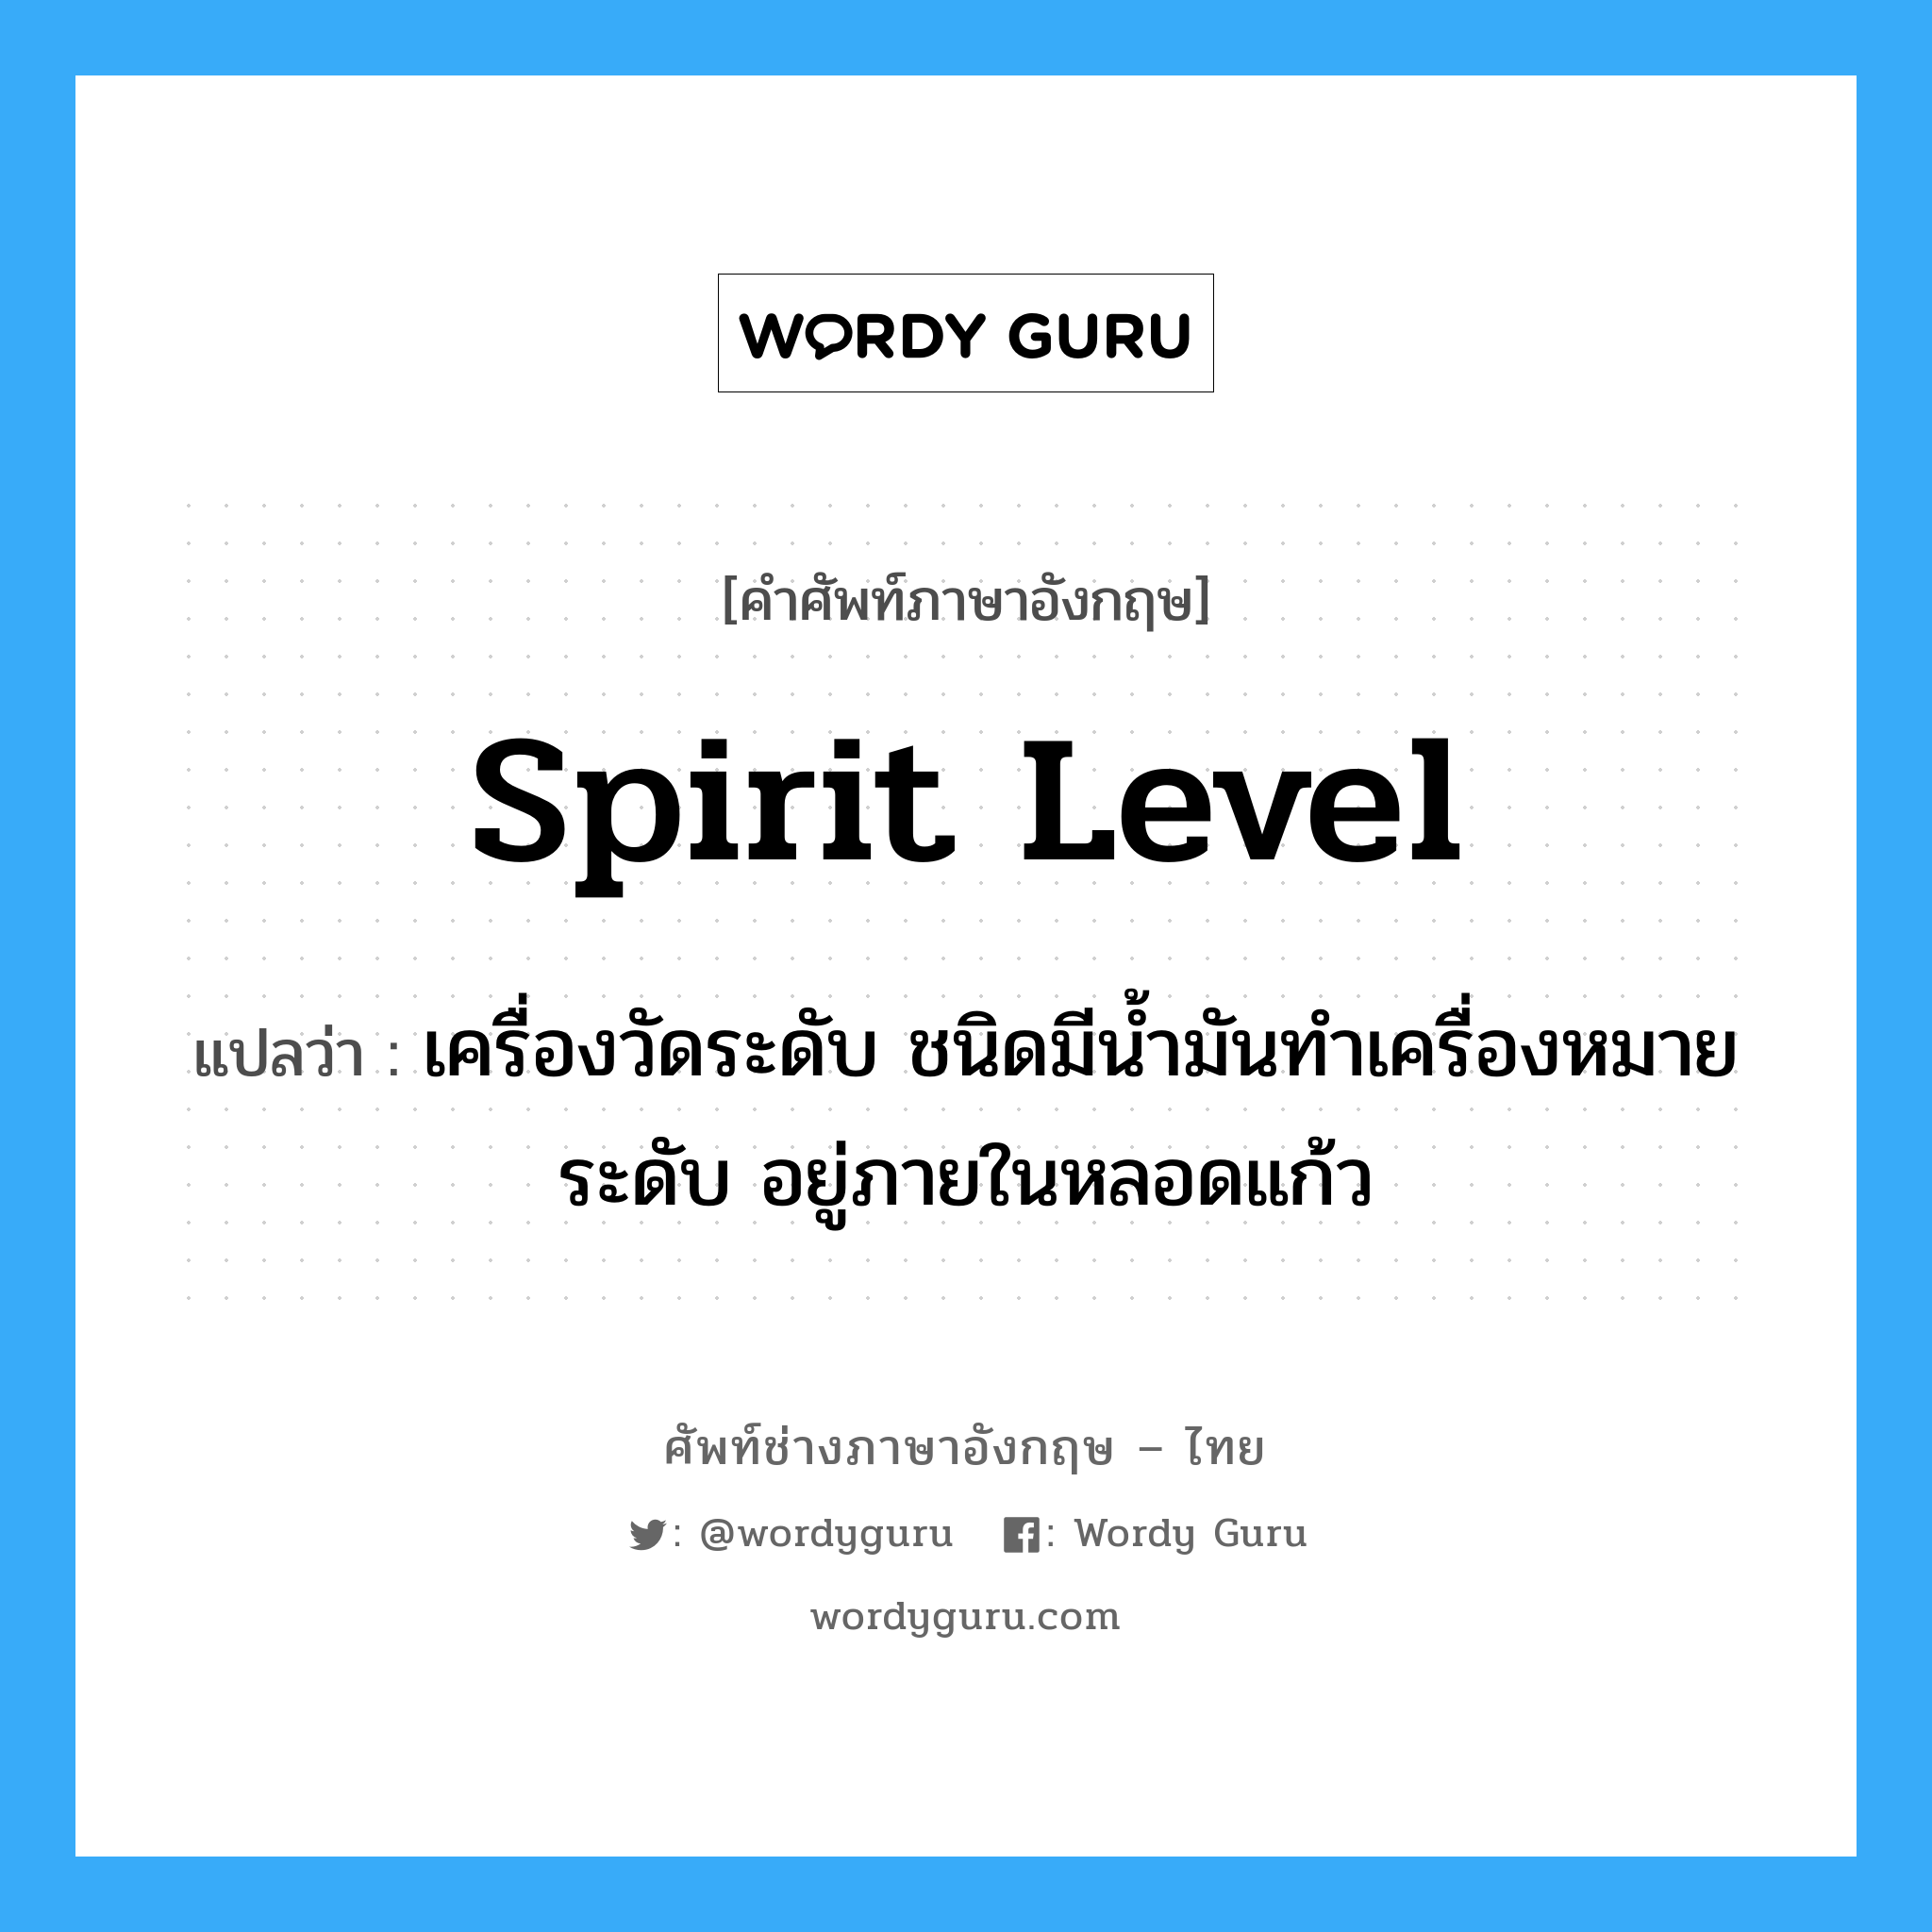 spirit level แปลว่า?, คำศัพท์ช่างภาษาอังกฤษ - ไทย spirit level คำศัพท์ภาษาอังกฤษ spirit level แปลว่า เครื่องวัดระดับ ชนิดมีน้ำมันทำเครื่องหมายระดับ อยู่ภายในหลอดแก้ว